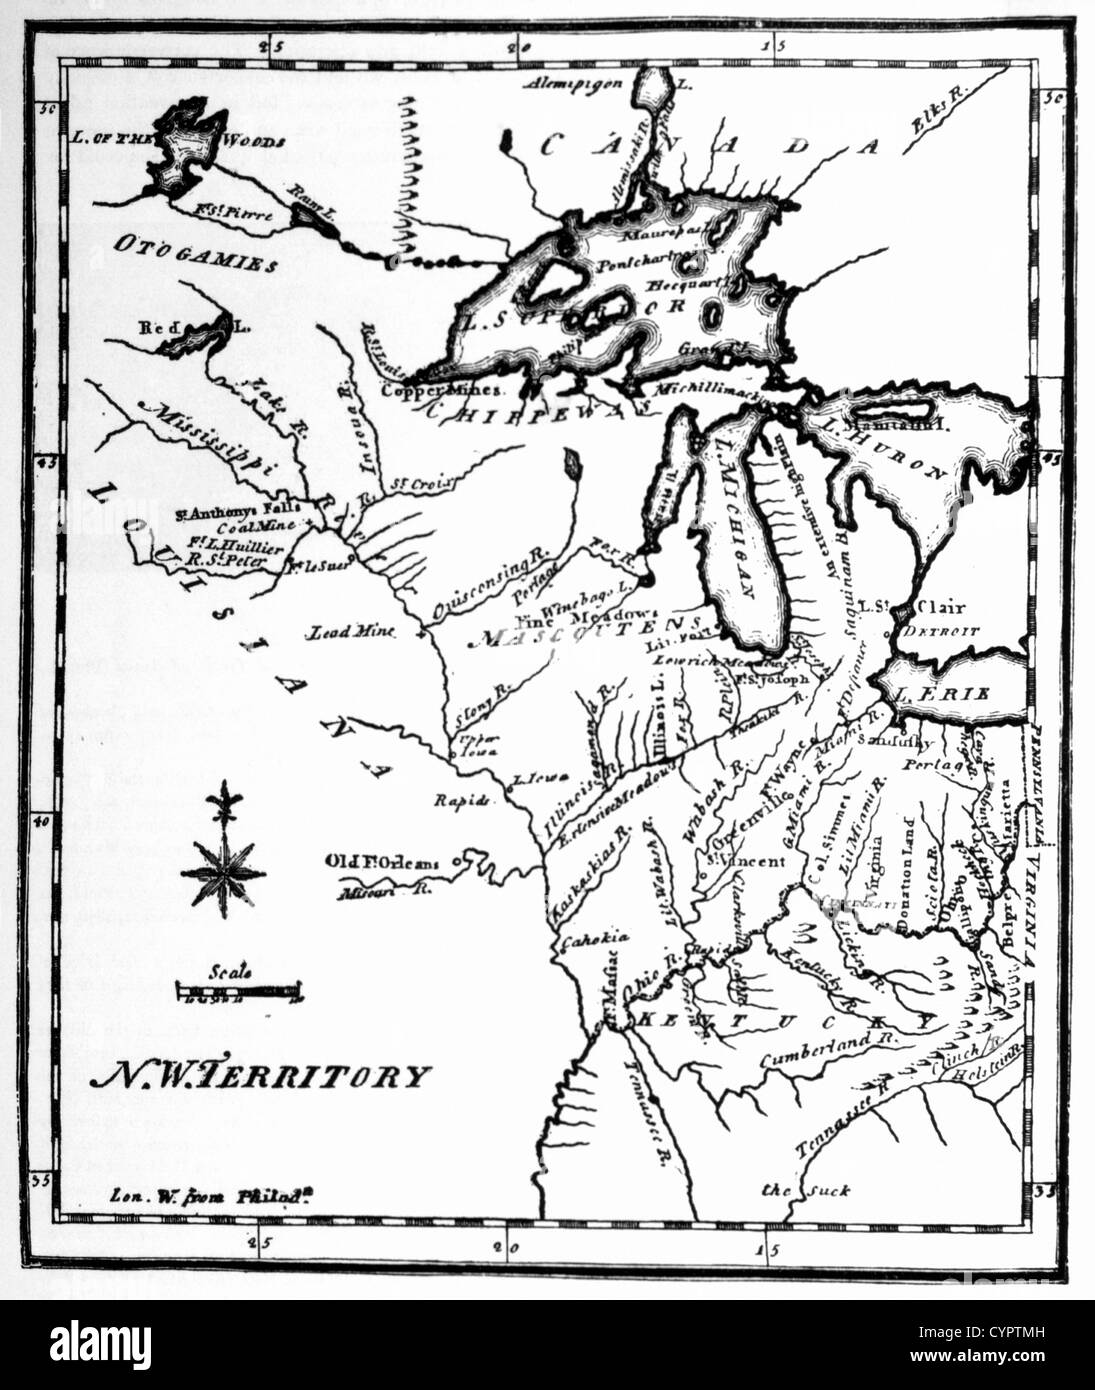 Territori del nord-ovest mappa da Stati Uniti dizionario geografico, Philadelphia, Pennsylvania, USA, incisione, circa 1795 Foto Stock